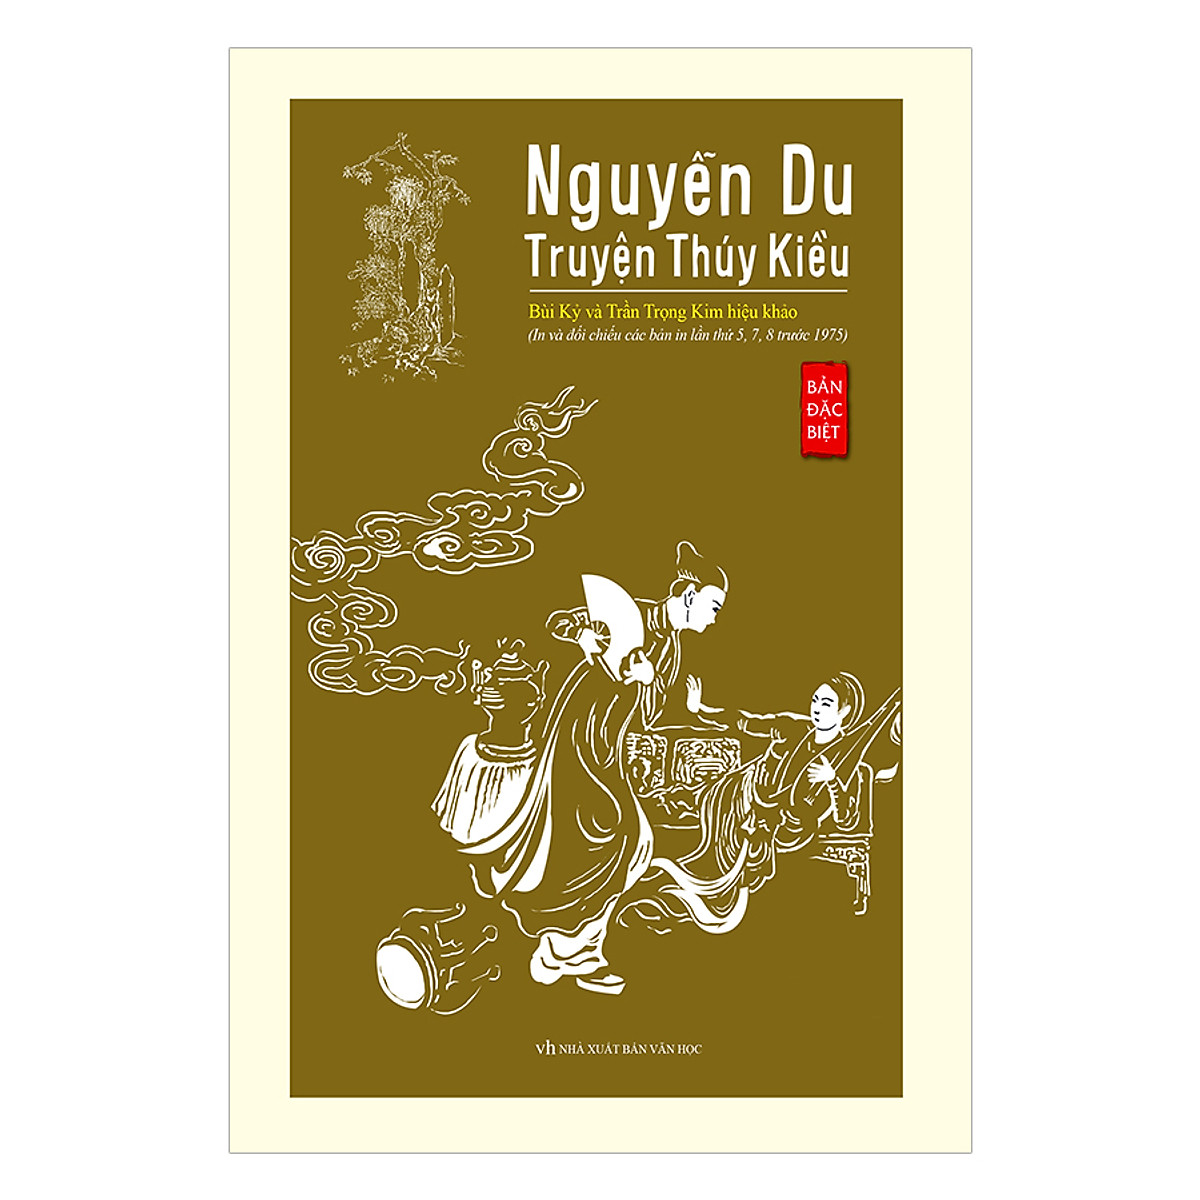 Nguyễn Du - Truyện Thúy Kiều (Bản Đăc Biệt) (Bìa Cứng)